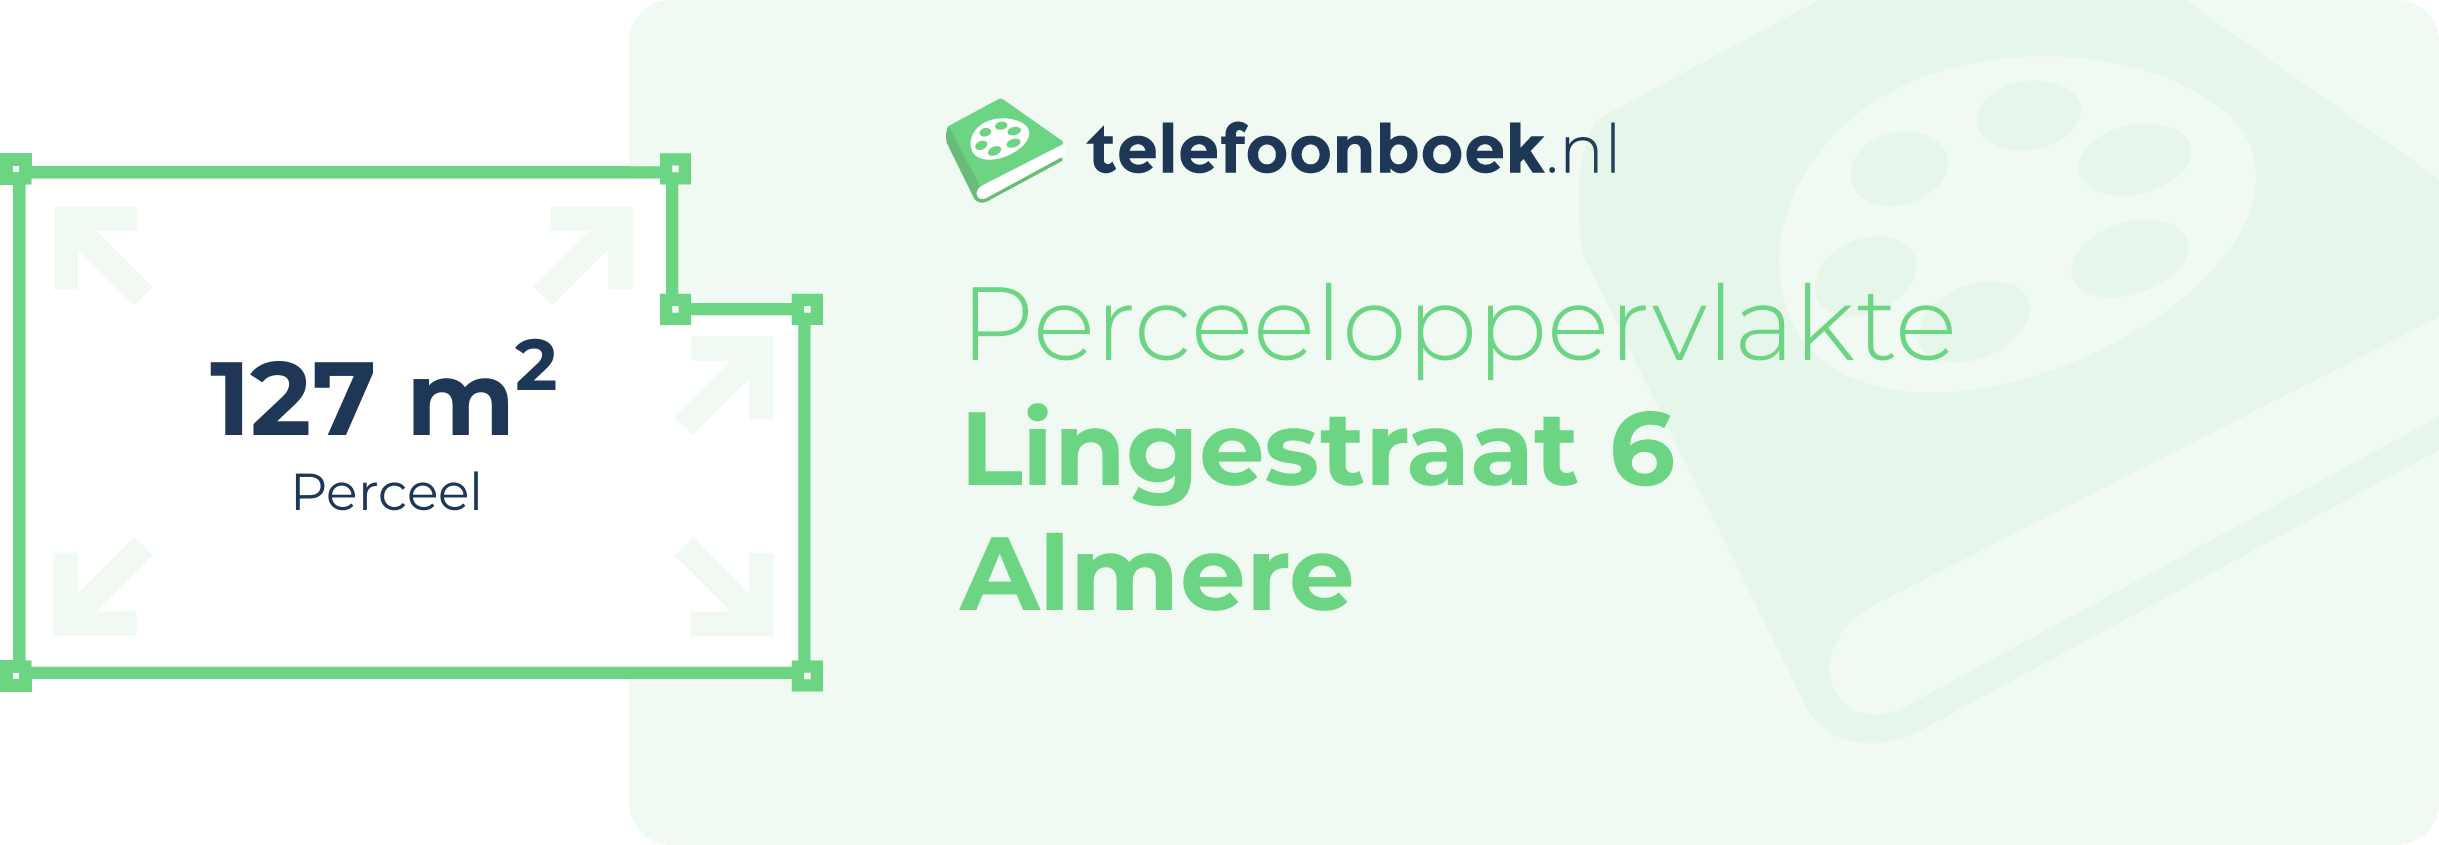 Perceeloppervlakte Lingestraat 6 Almere